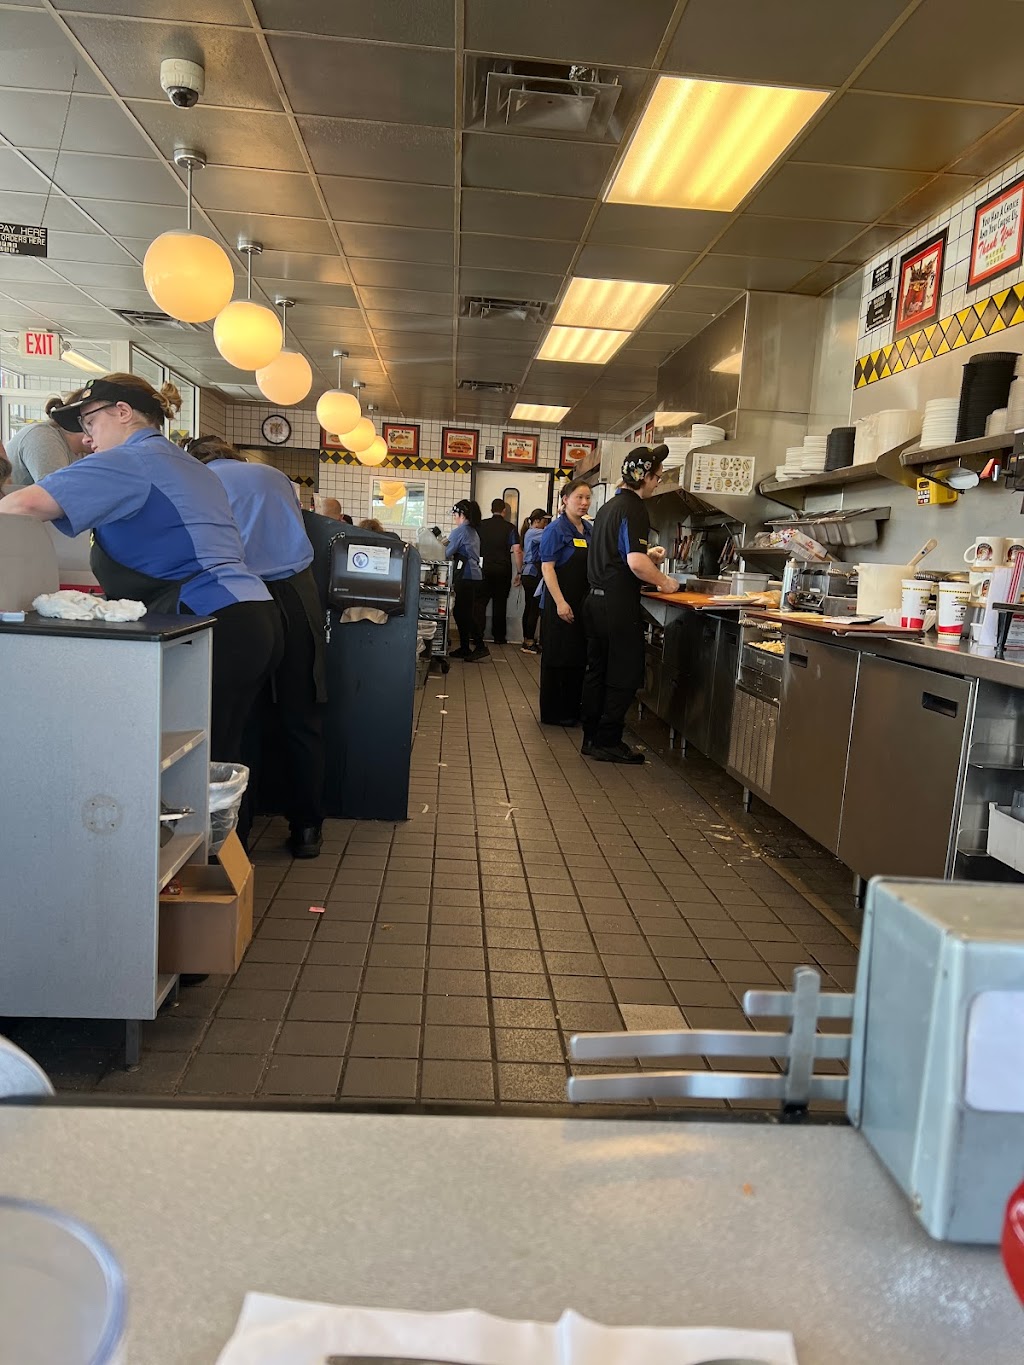 Waffle House | 3190 Medina Rd, Medina, OH 44256 | Phone: (330) 725-1538